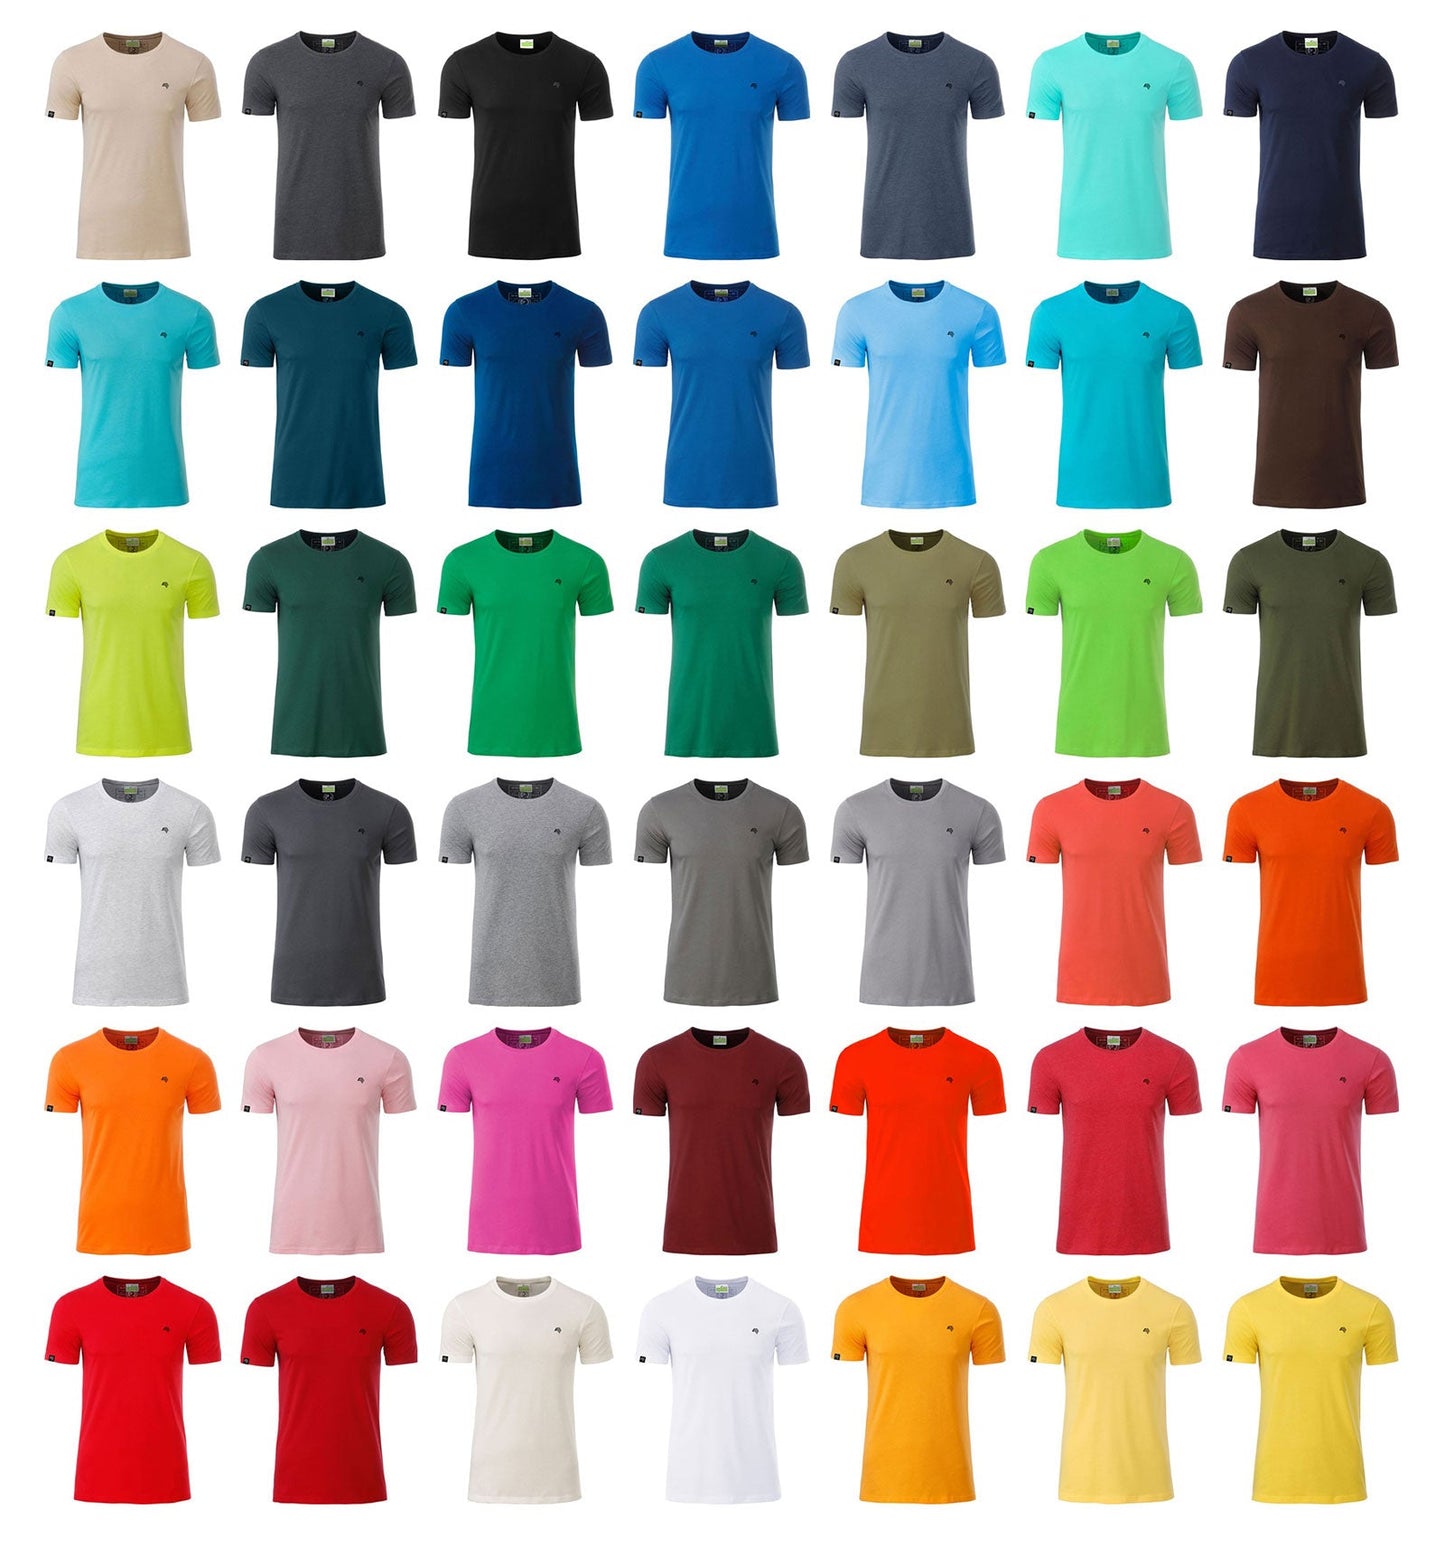 JAN 8008 ― Herren Bio-Baumwolle T-Shirt - Grün Acid Gelb